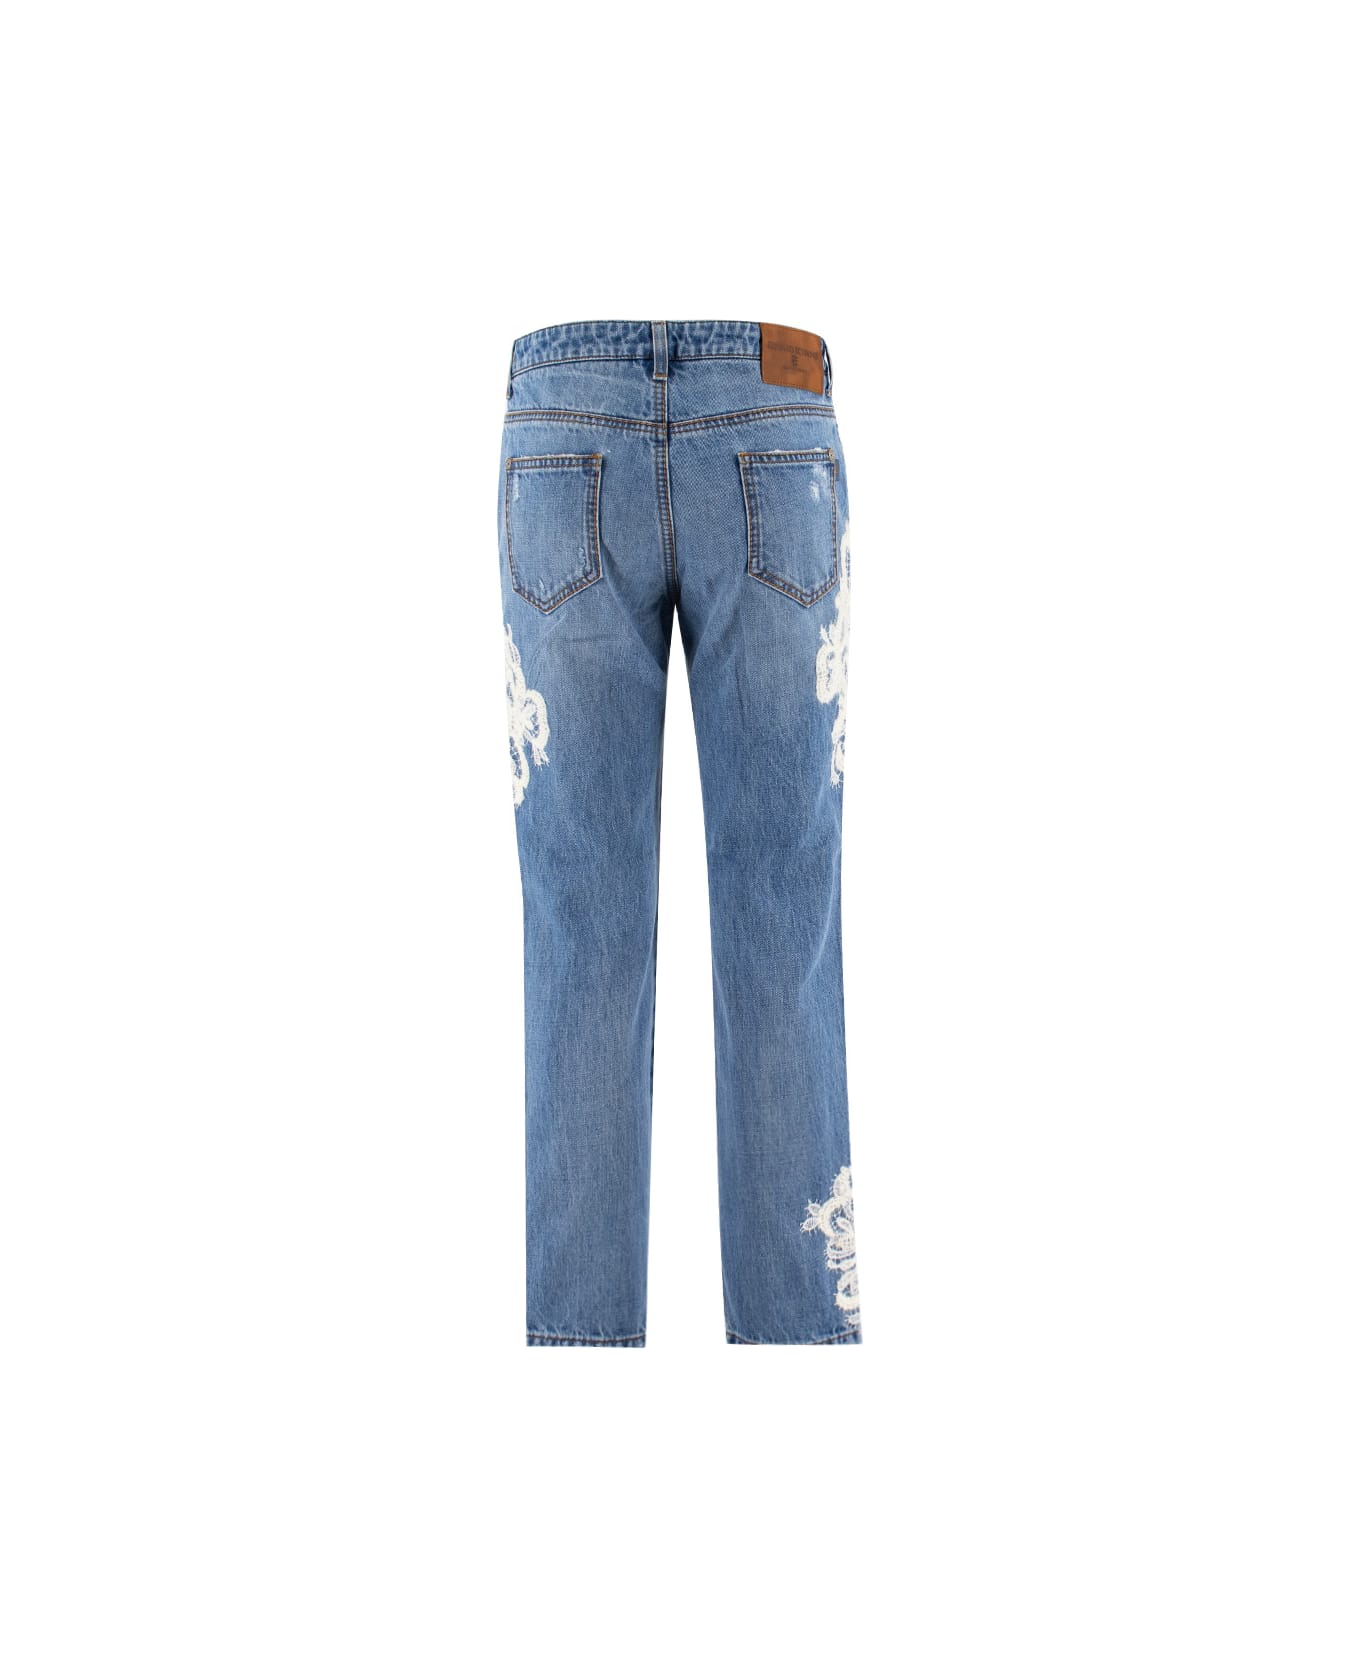 Ermanno Scervino Jeans - BRIGHT COBALT デニム